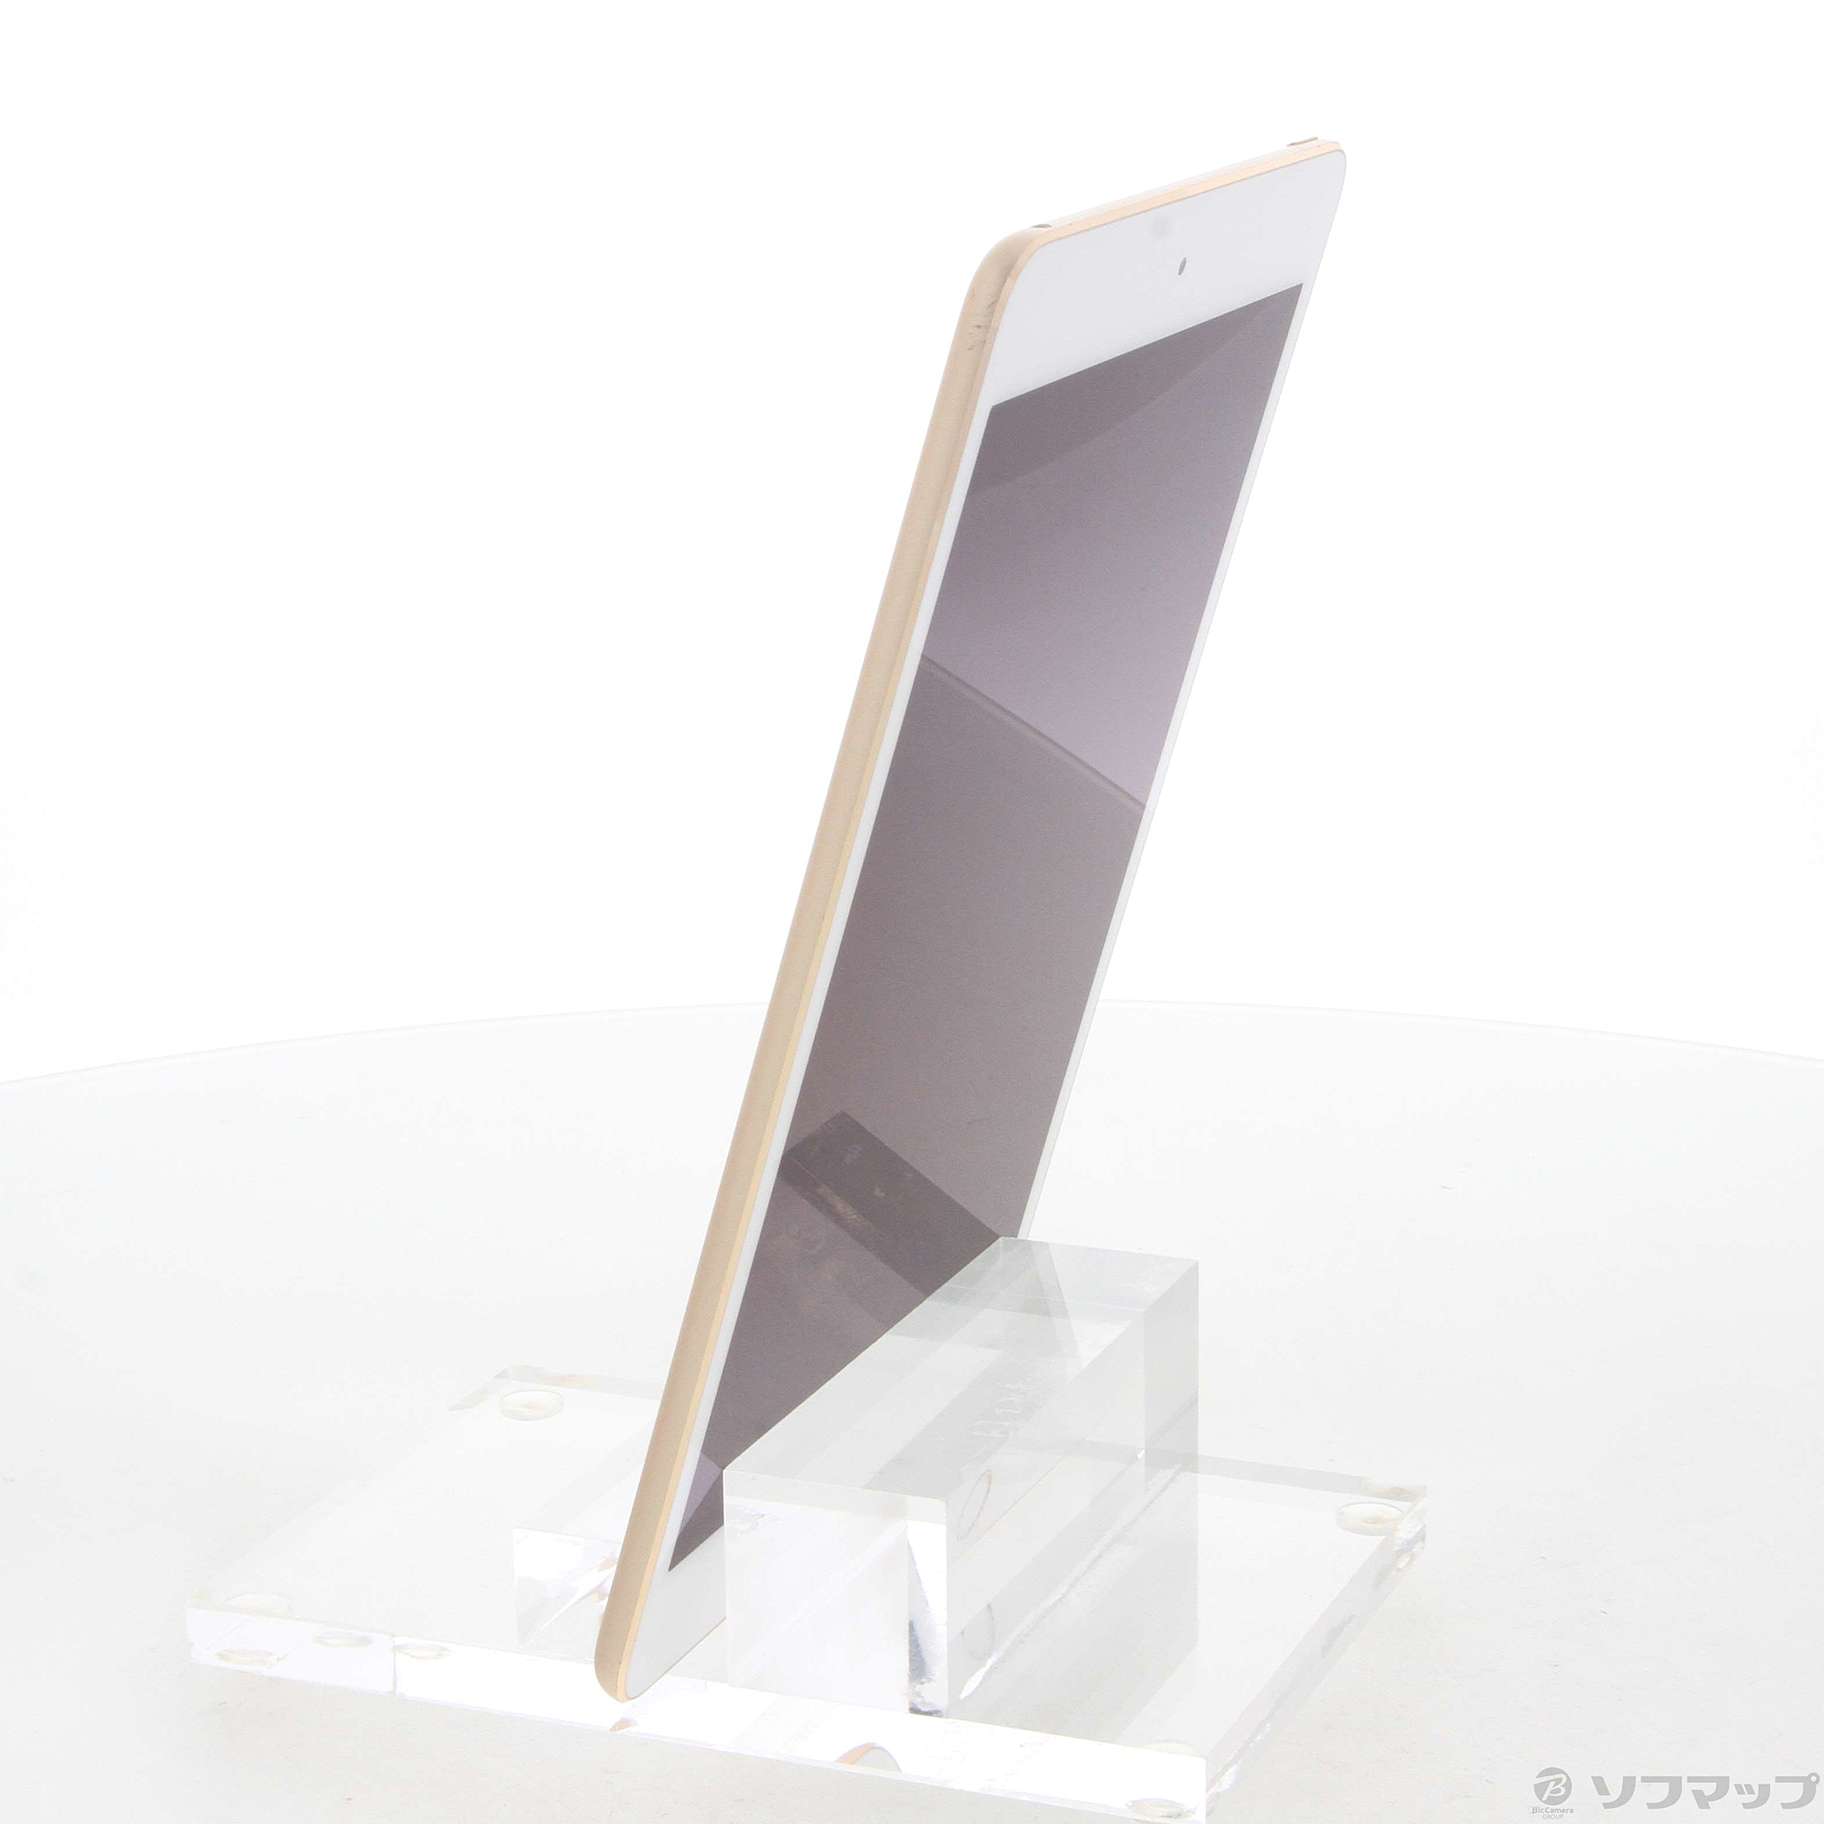 Apple iPad mini 4 Wi-Fi 128GB 本体 ゴールド greysearchafrica.com